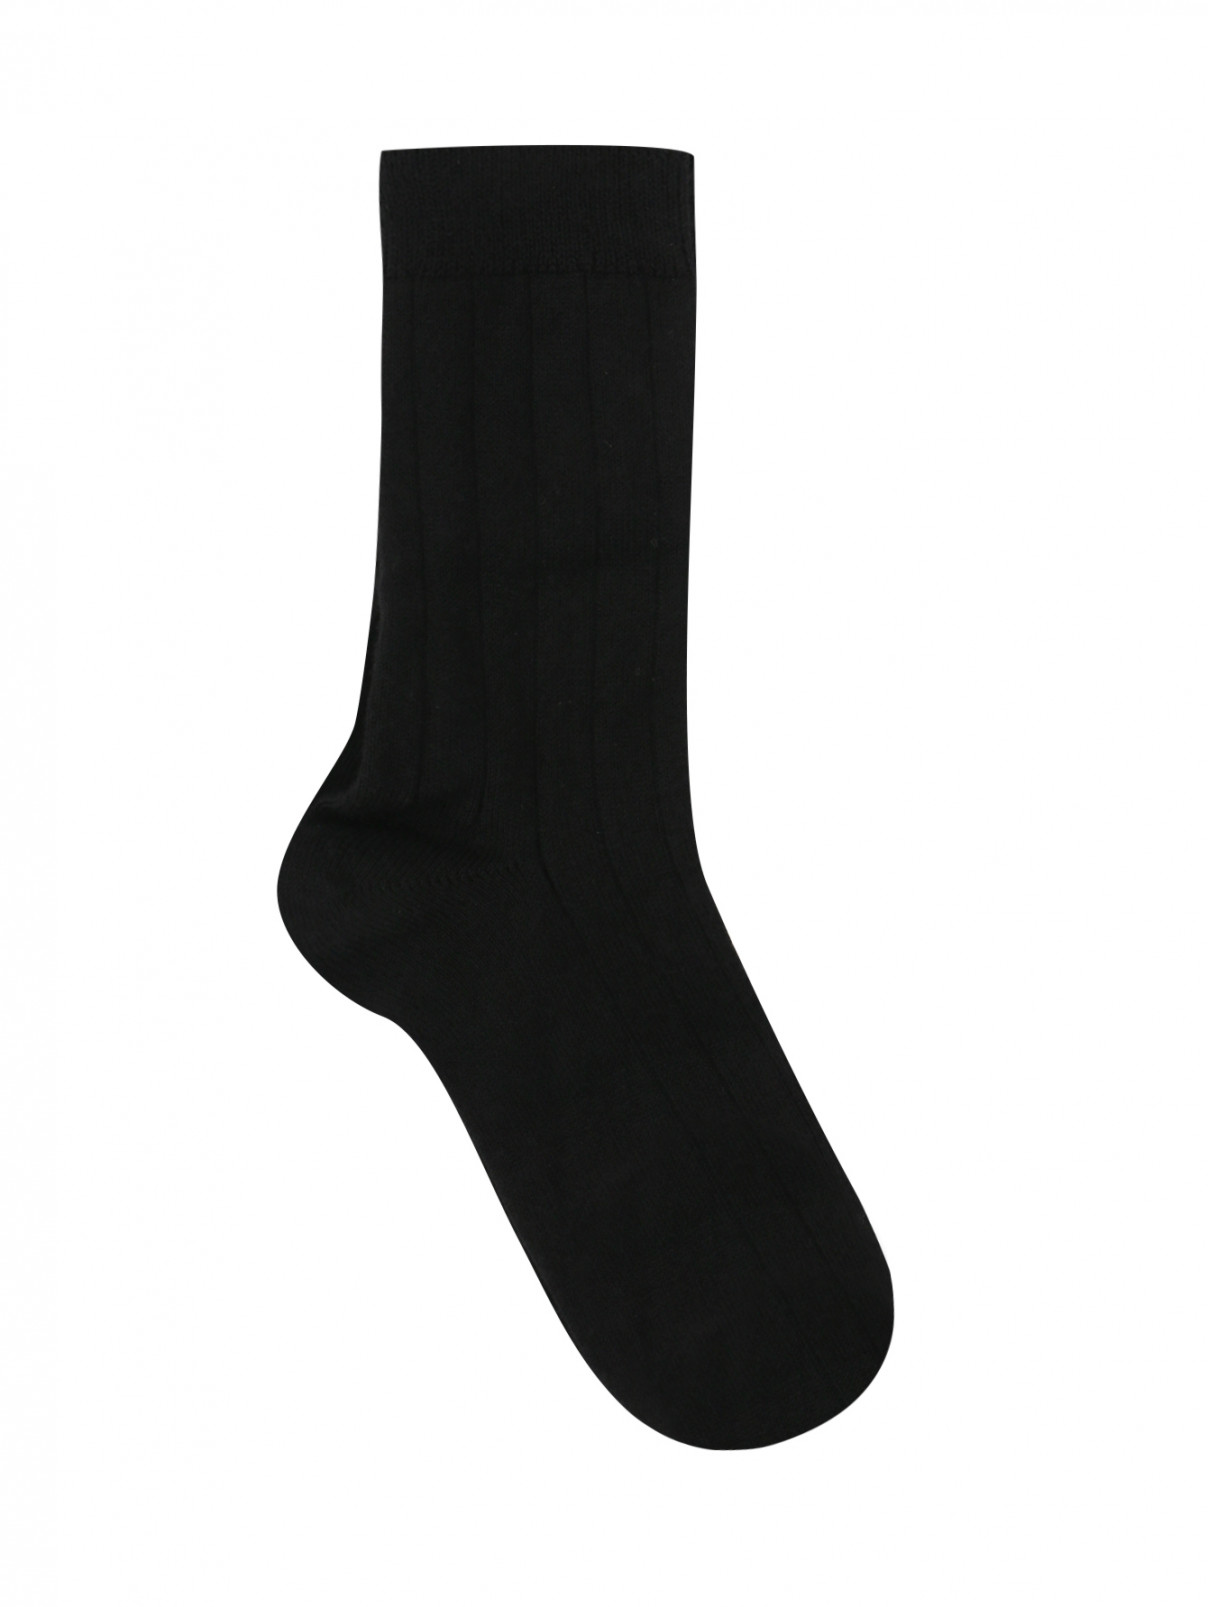 Носки из хлопка Story Loris  –  Общий вид  – Цвет:  Черный